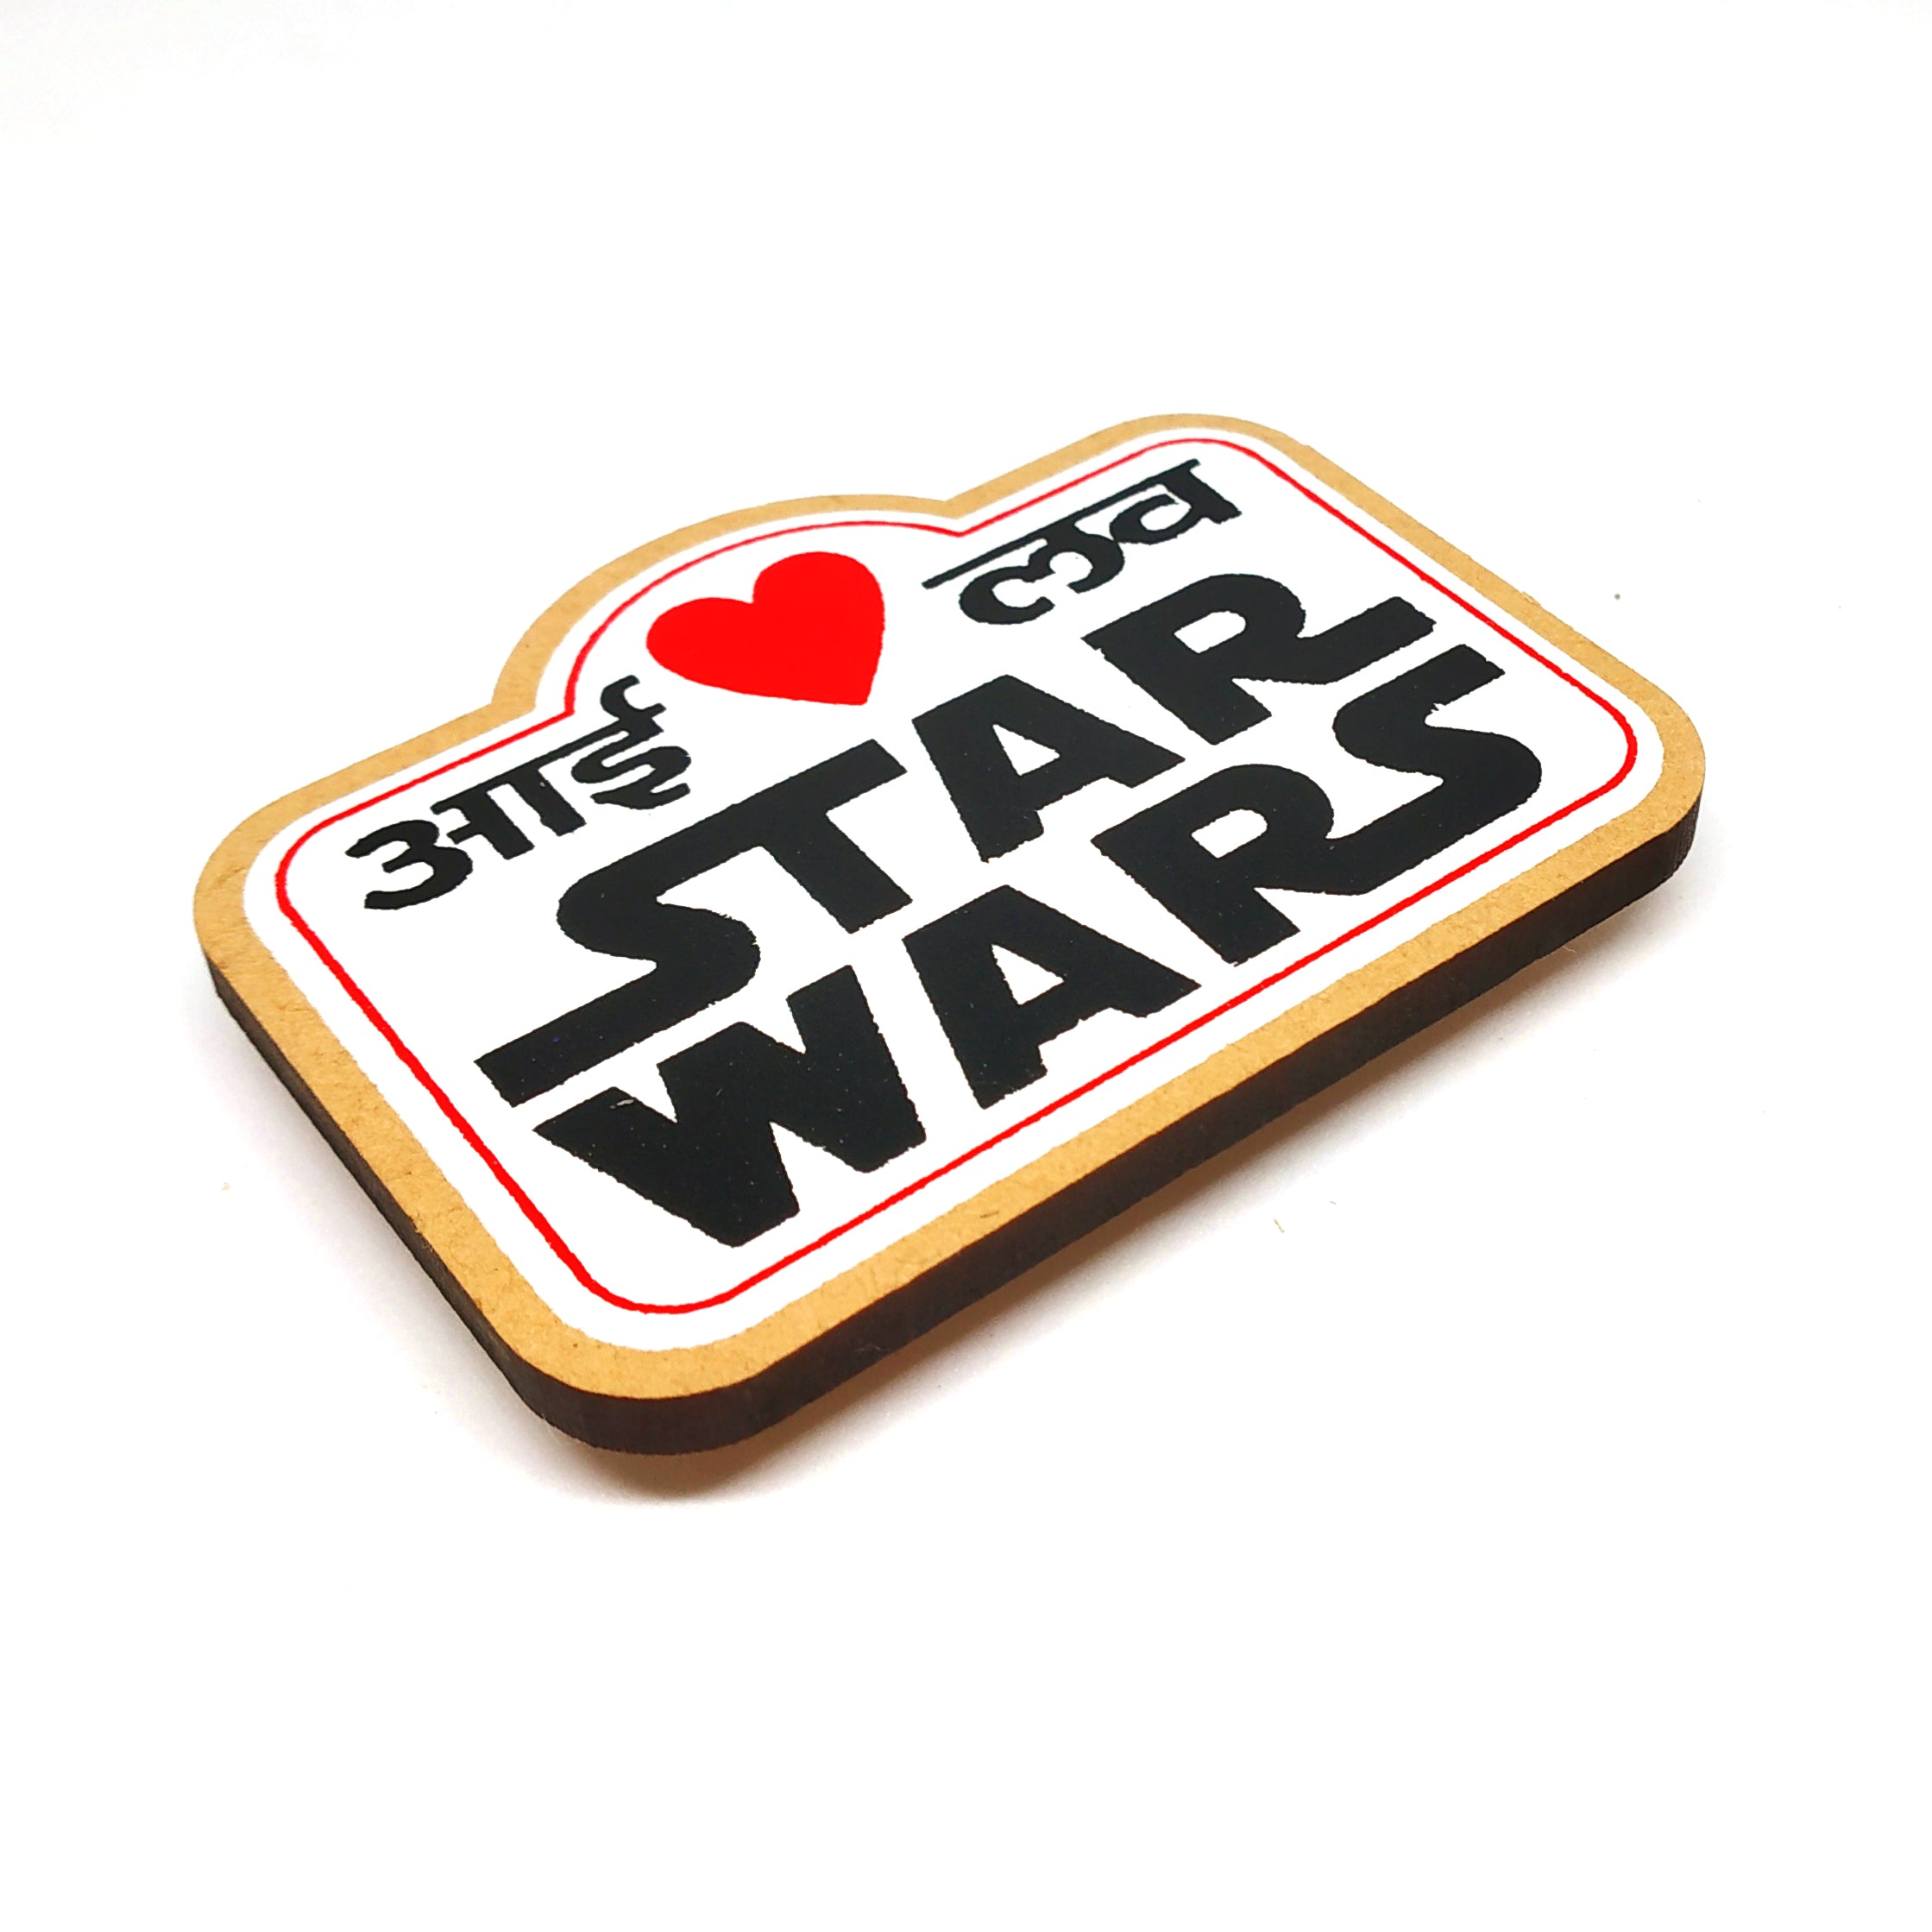 I Love Star Wars - Fridge Magnet